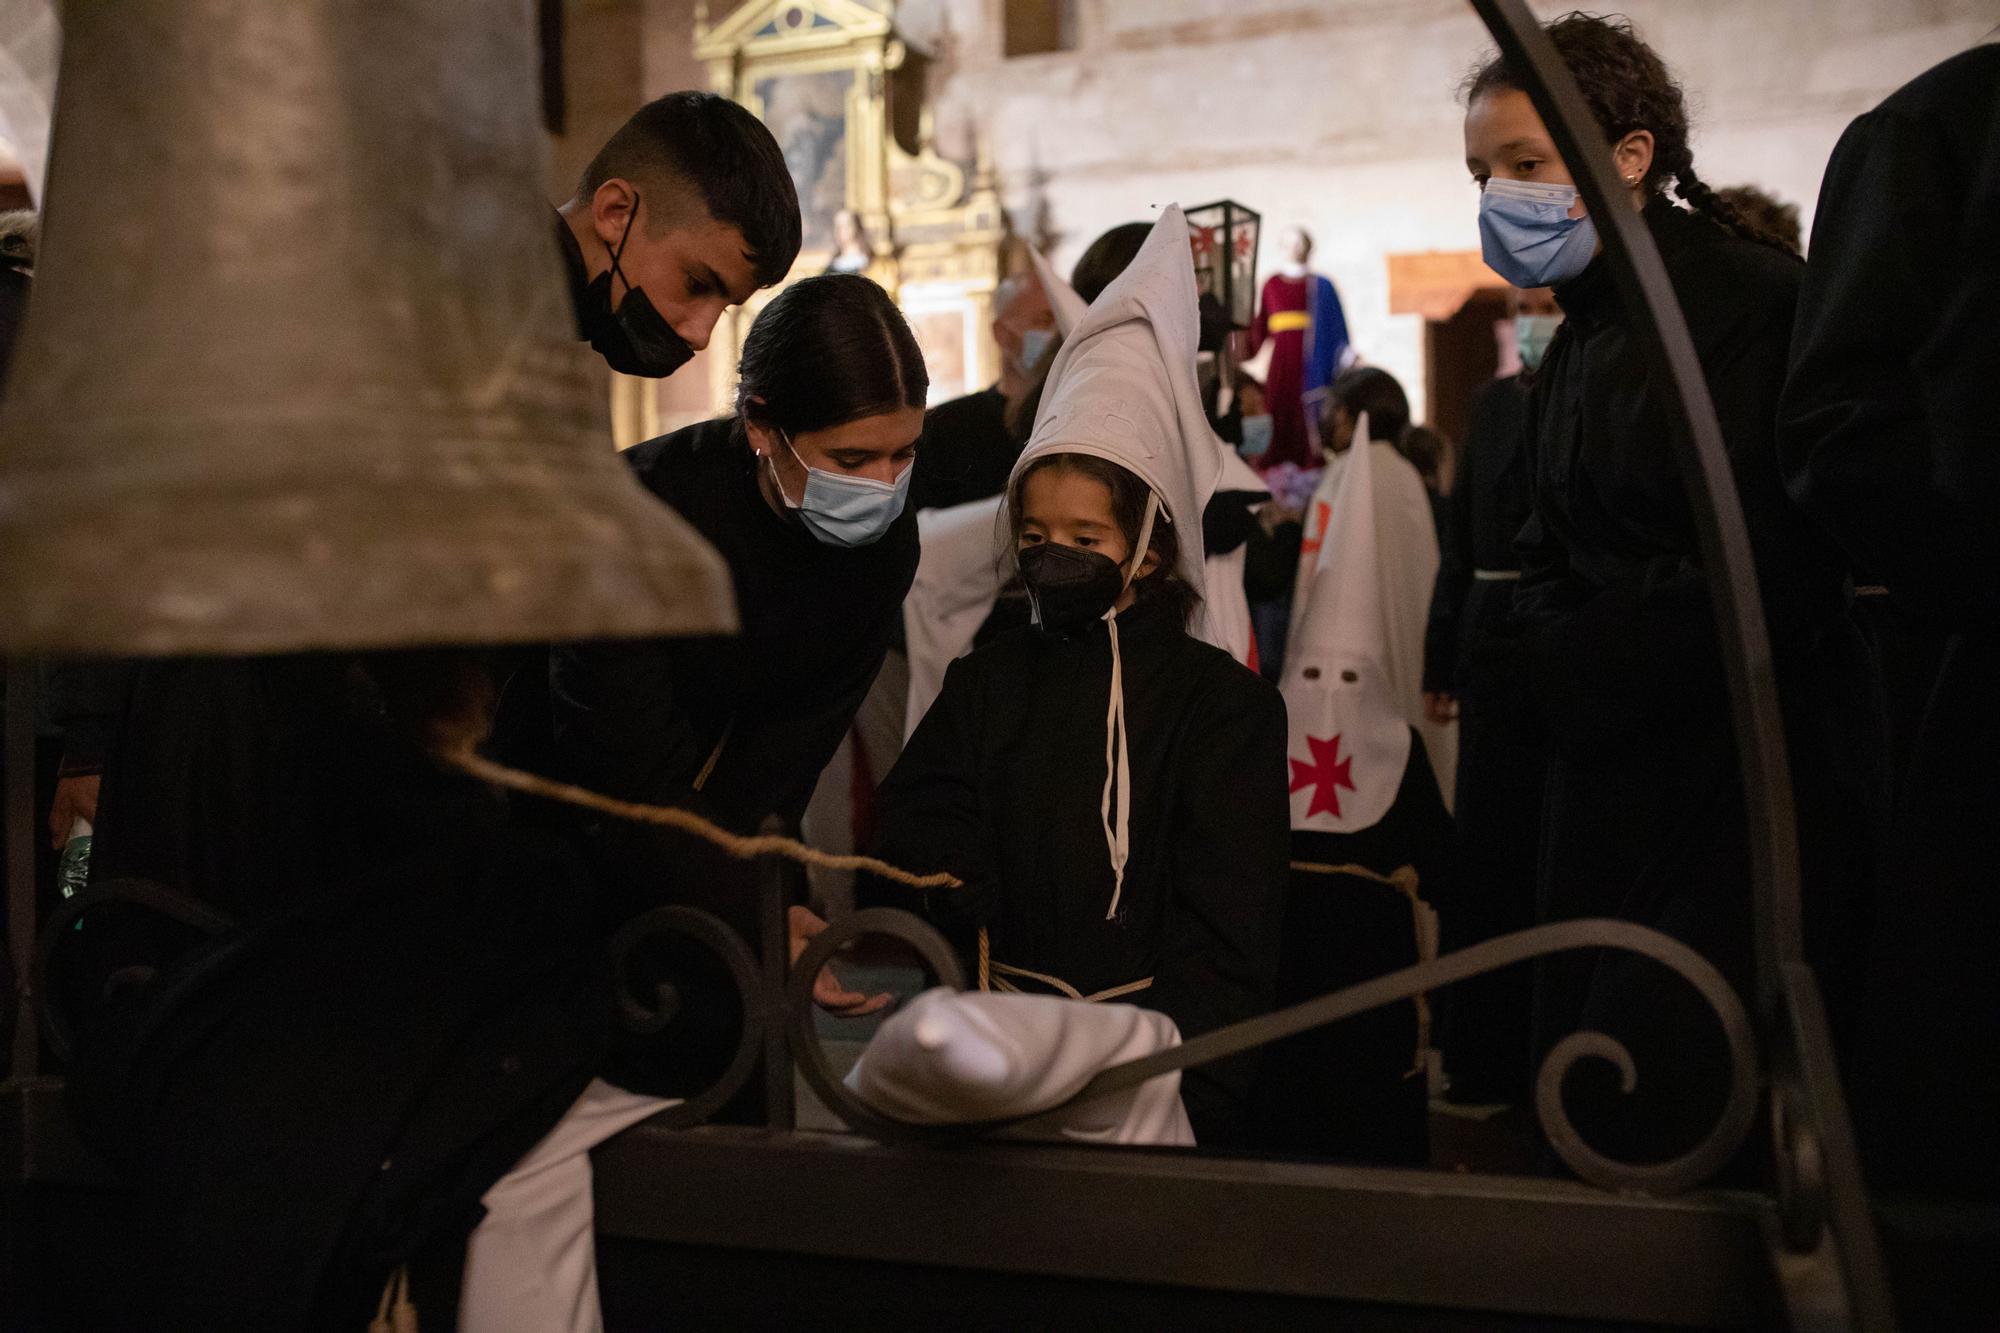 GALERIA | Las mejores imágenes del Vía Crucis de Toro